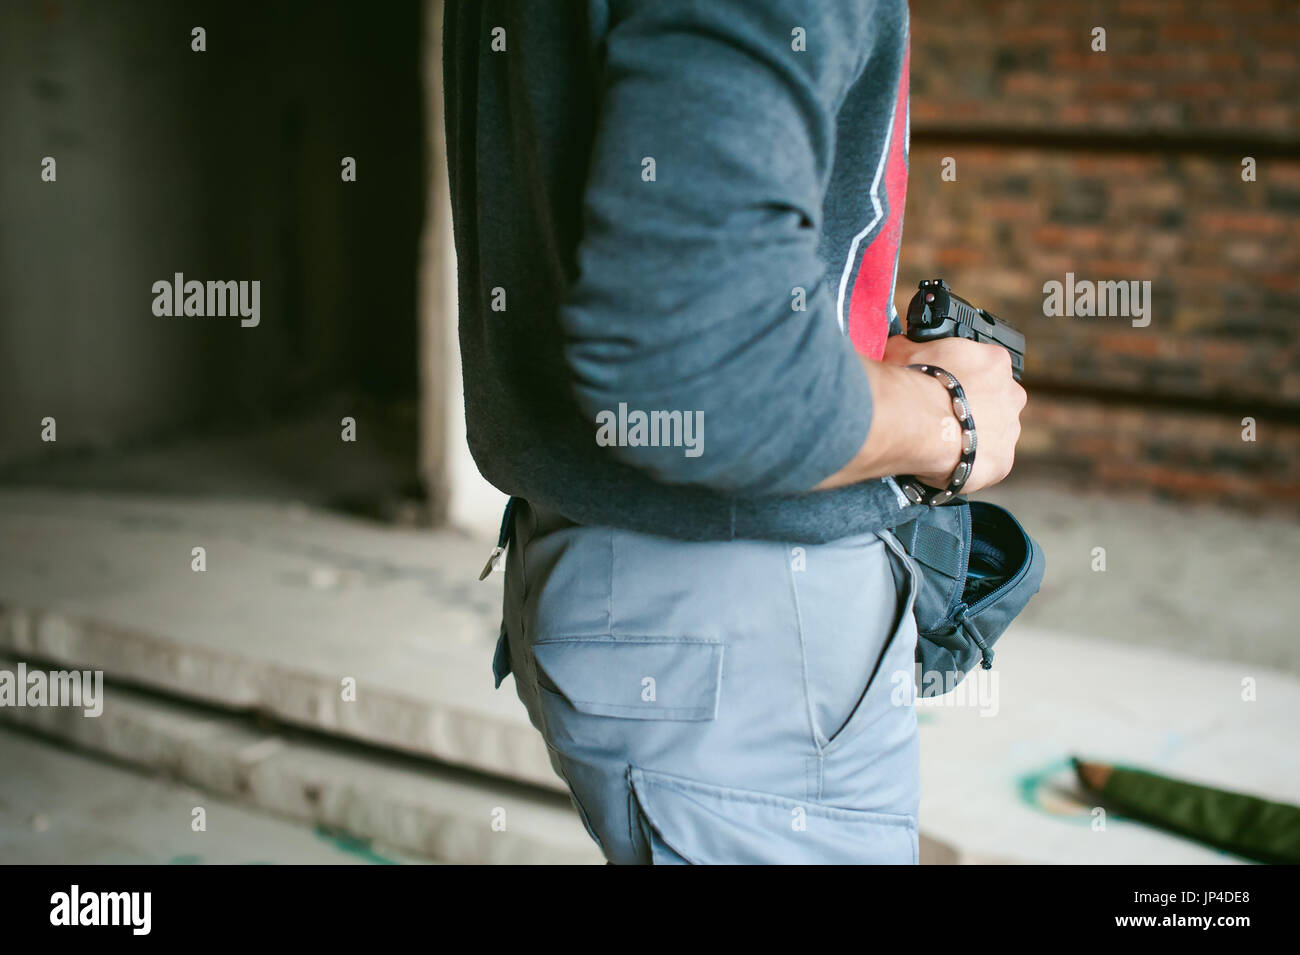 Uomo tira una pistola fuori della sua borsa, tenendolo in mano Foto Stock